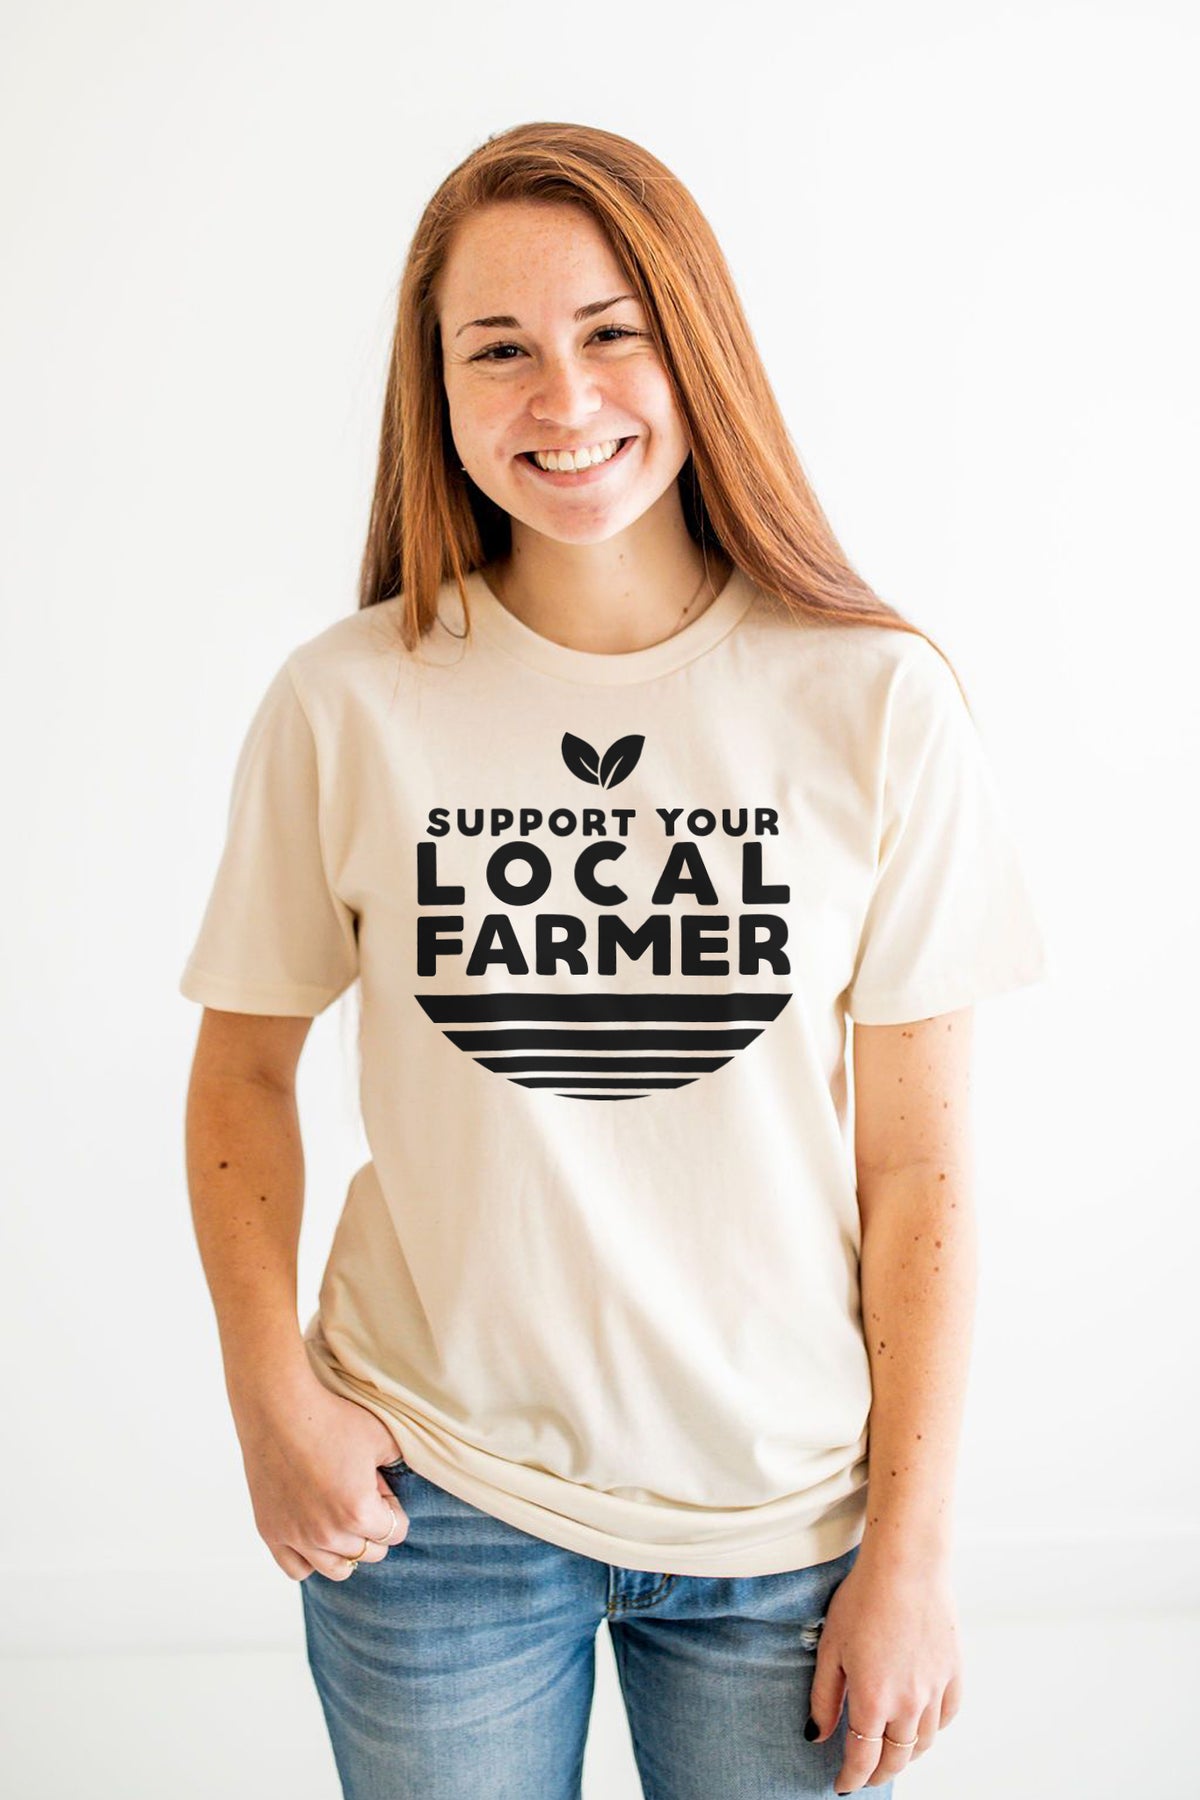 Local Farmer Shirt